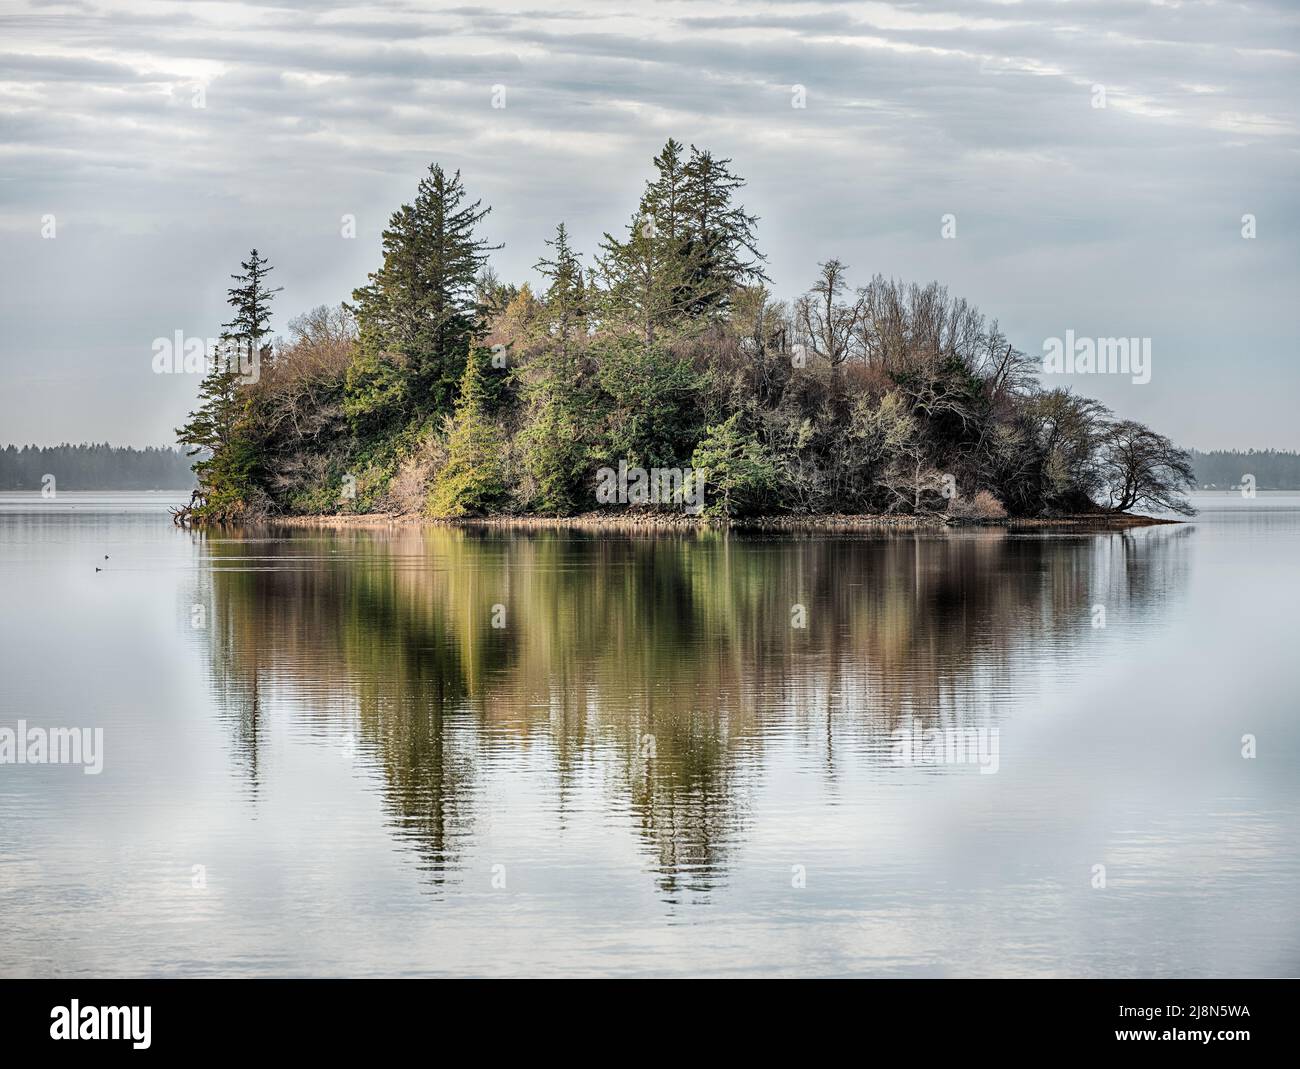 Bäume bedecken eine kleine einsame Insel in der Willapa Bay in der Nähe der Washington Coast. Stockfoto